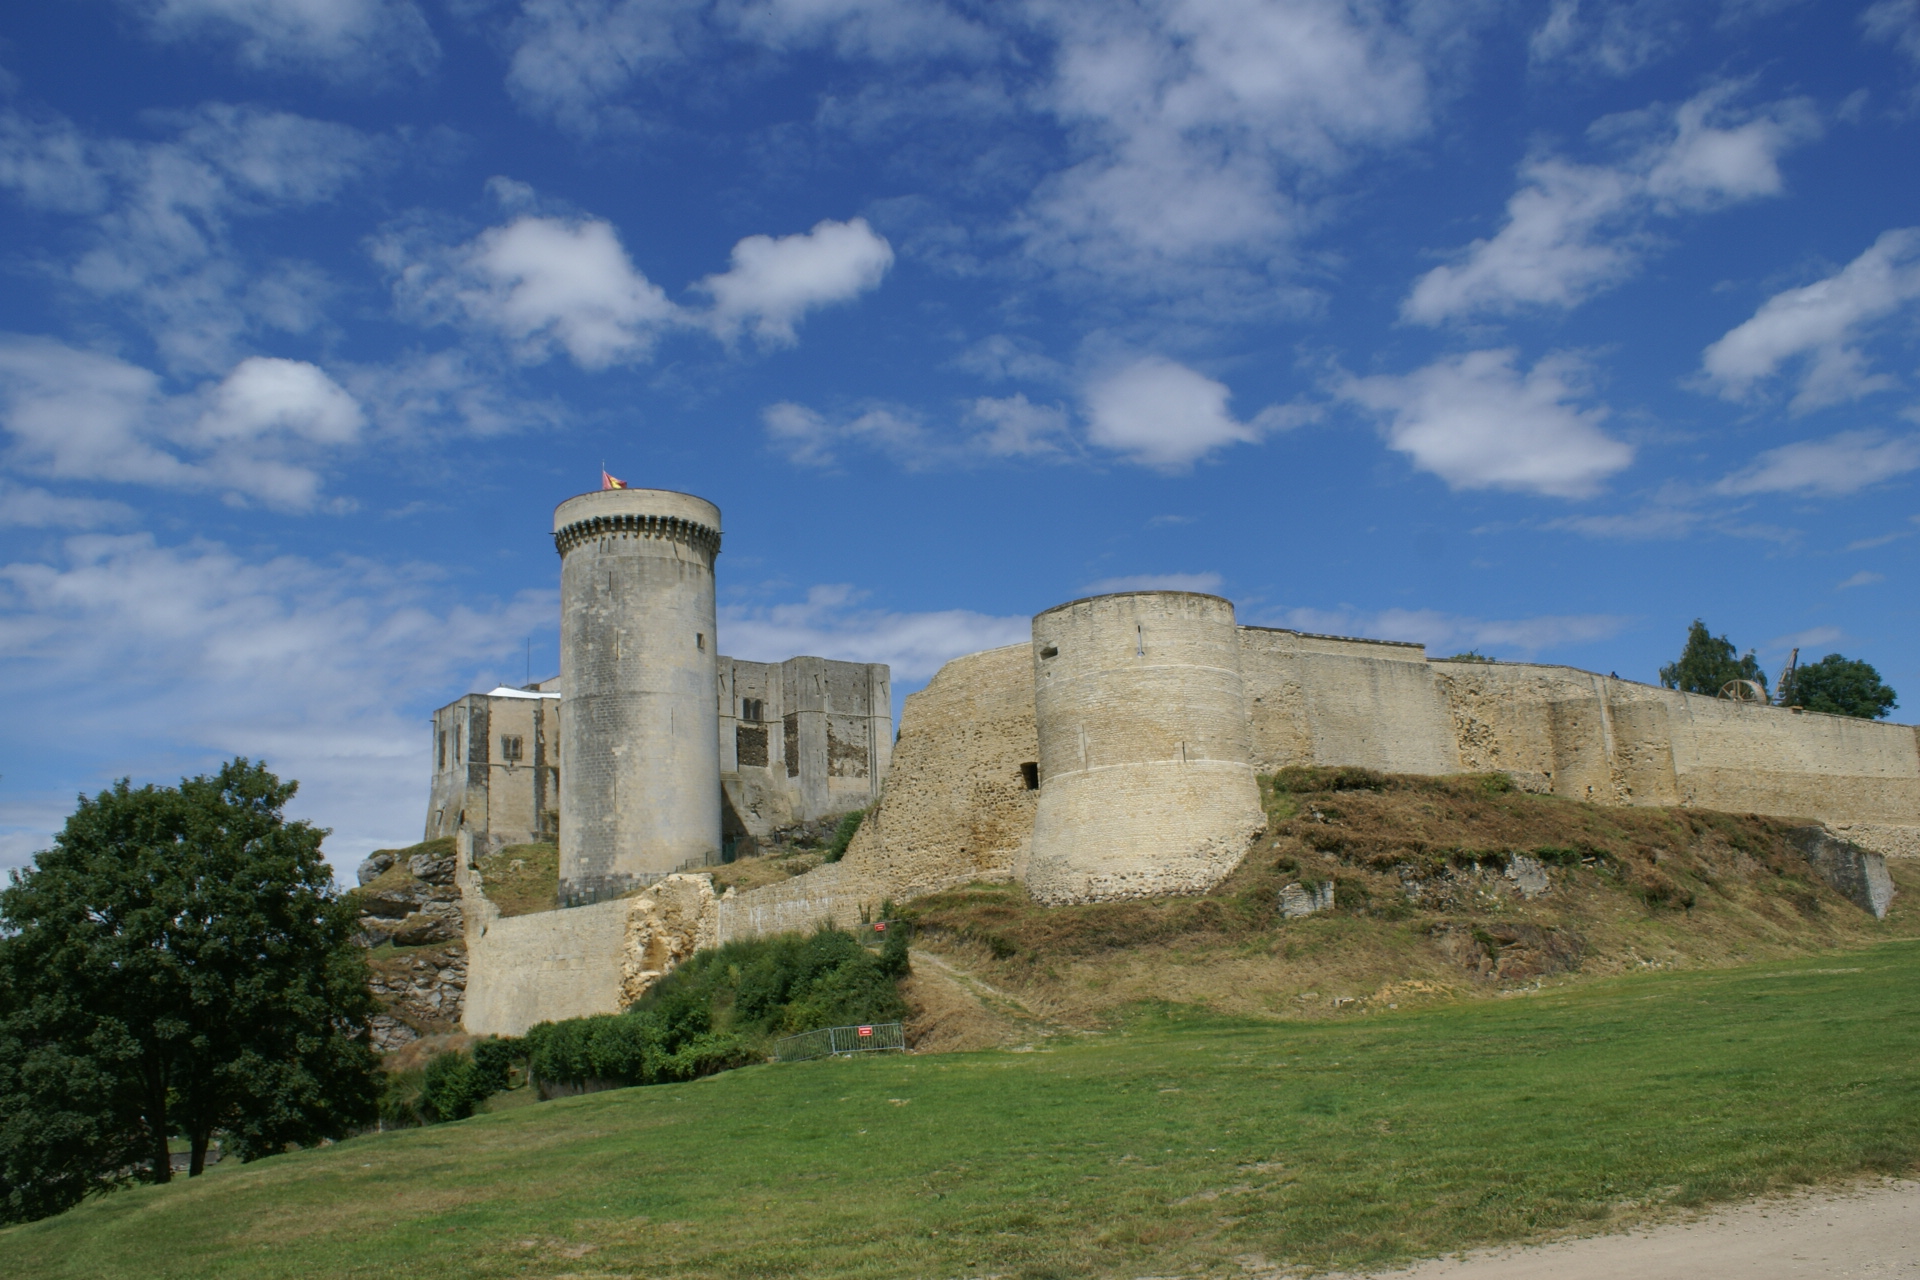 Falaise Castle, Normandy, France